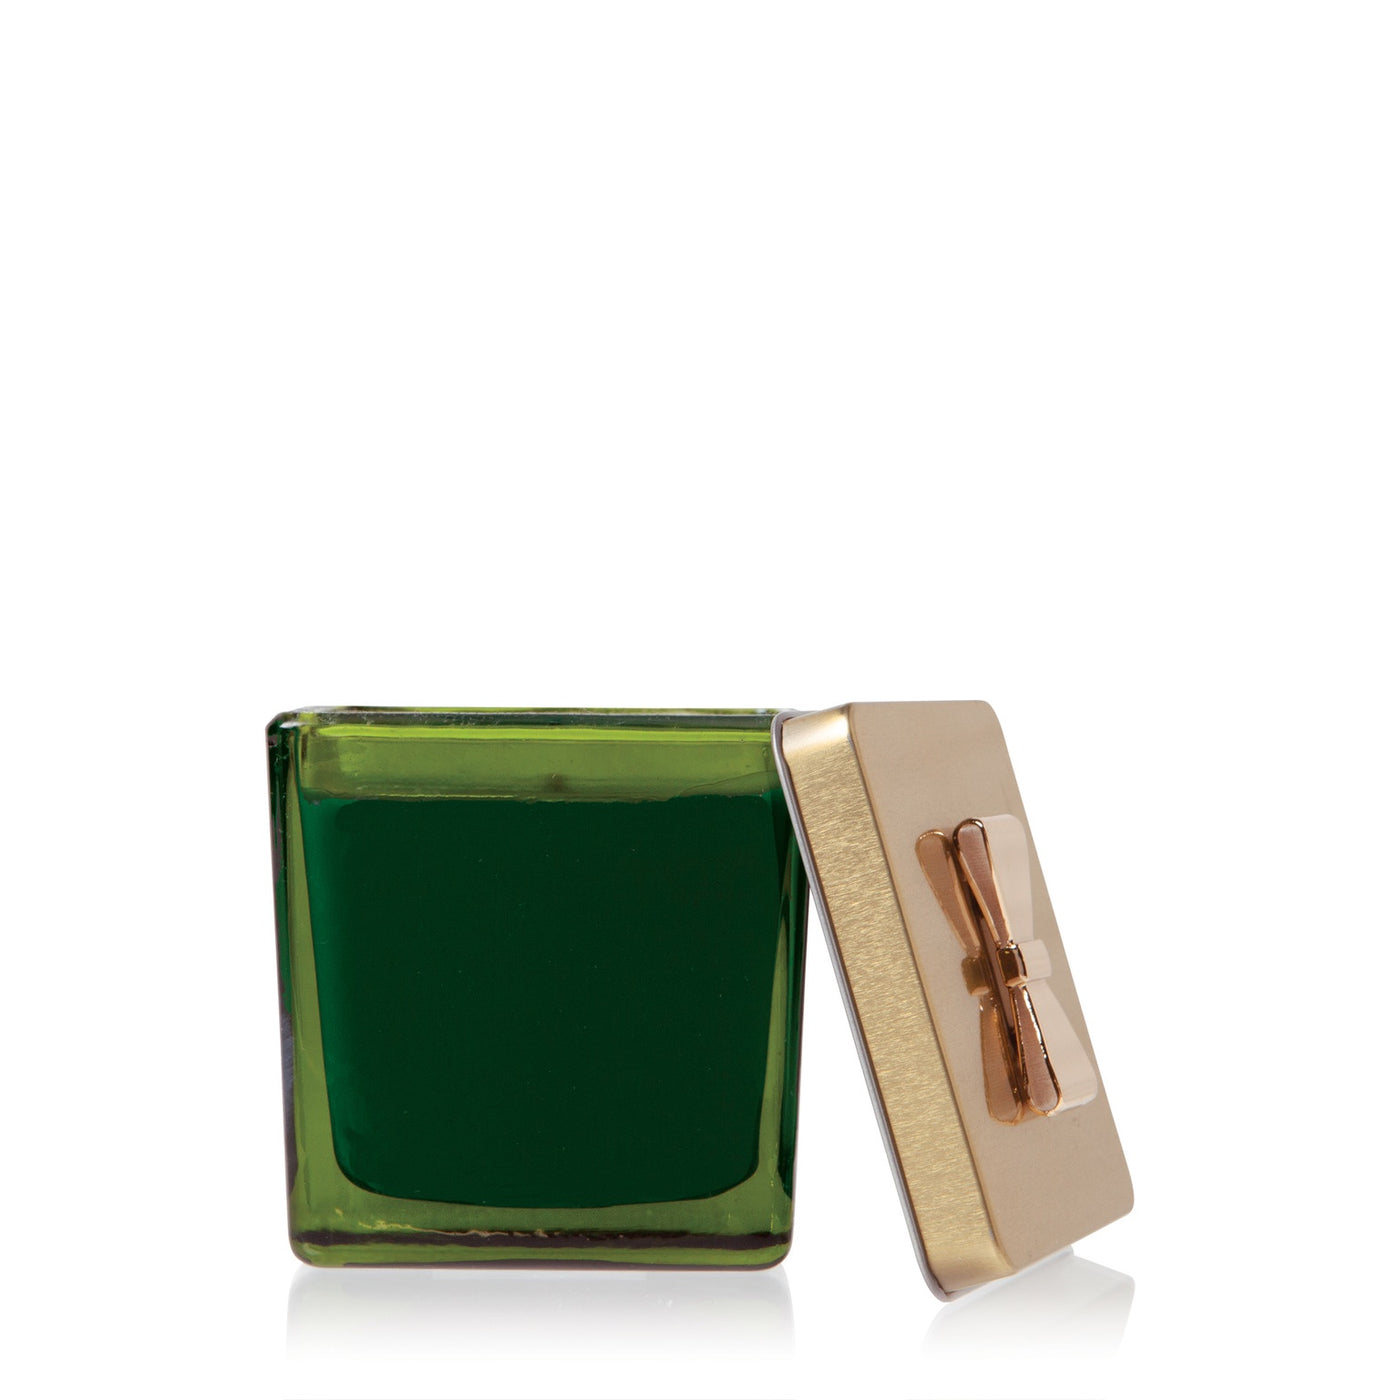 Frasier Fir Green Glass Gift Box Candle